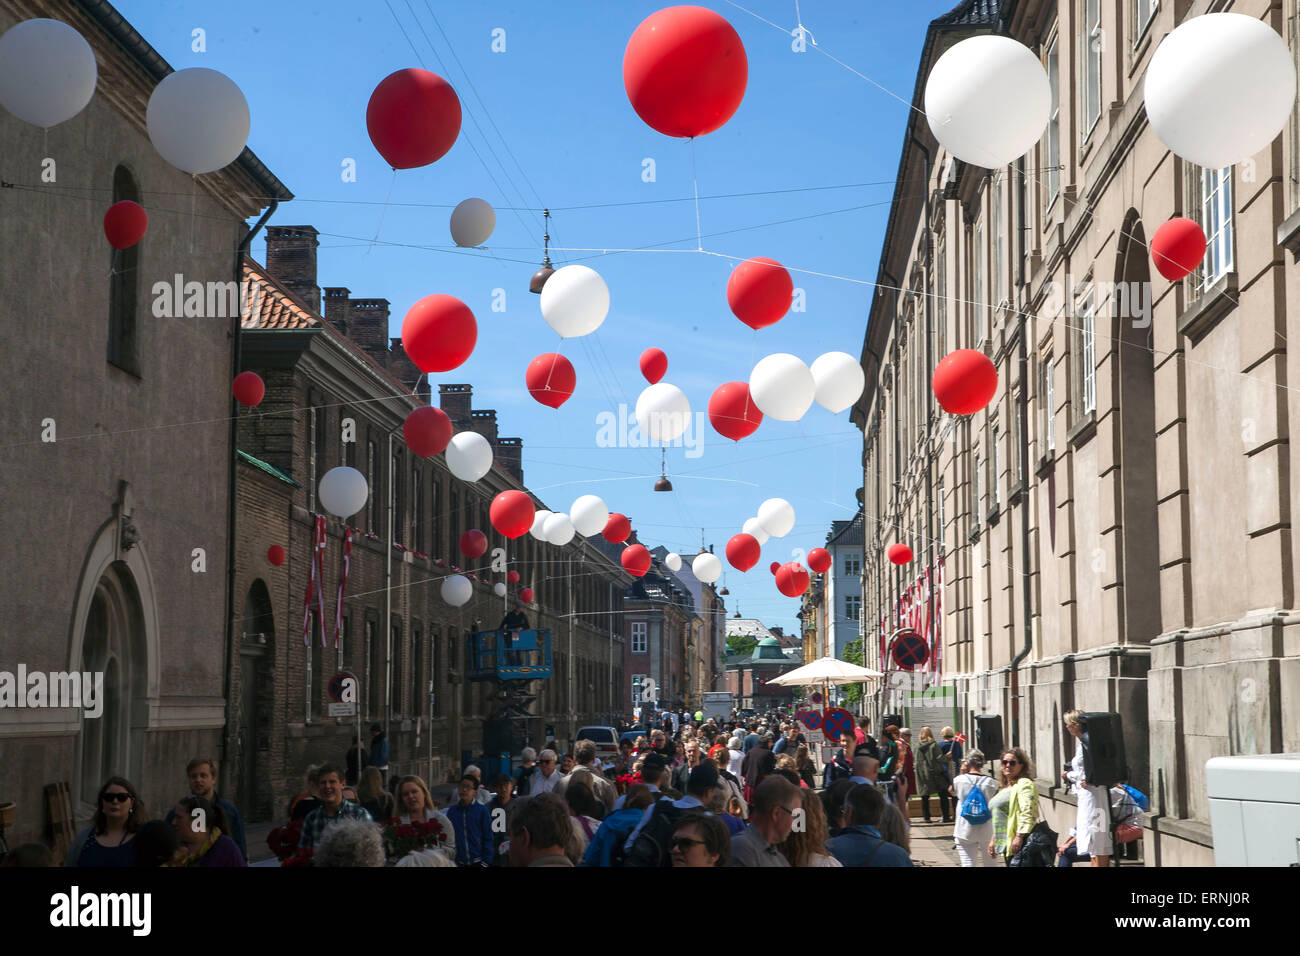 Copenhague, Dinamarca, el 5 de mayo de 2015: celebración del Día de la Constitución danesa continuas en las calles alrededor del Parlamento y de la plaza del palacio. Aquí, una de las calles que conducen al interior del patio del palacio se viste de fiesta: Crédito OJPHOTOS/Alamy Live News Foto de stock